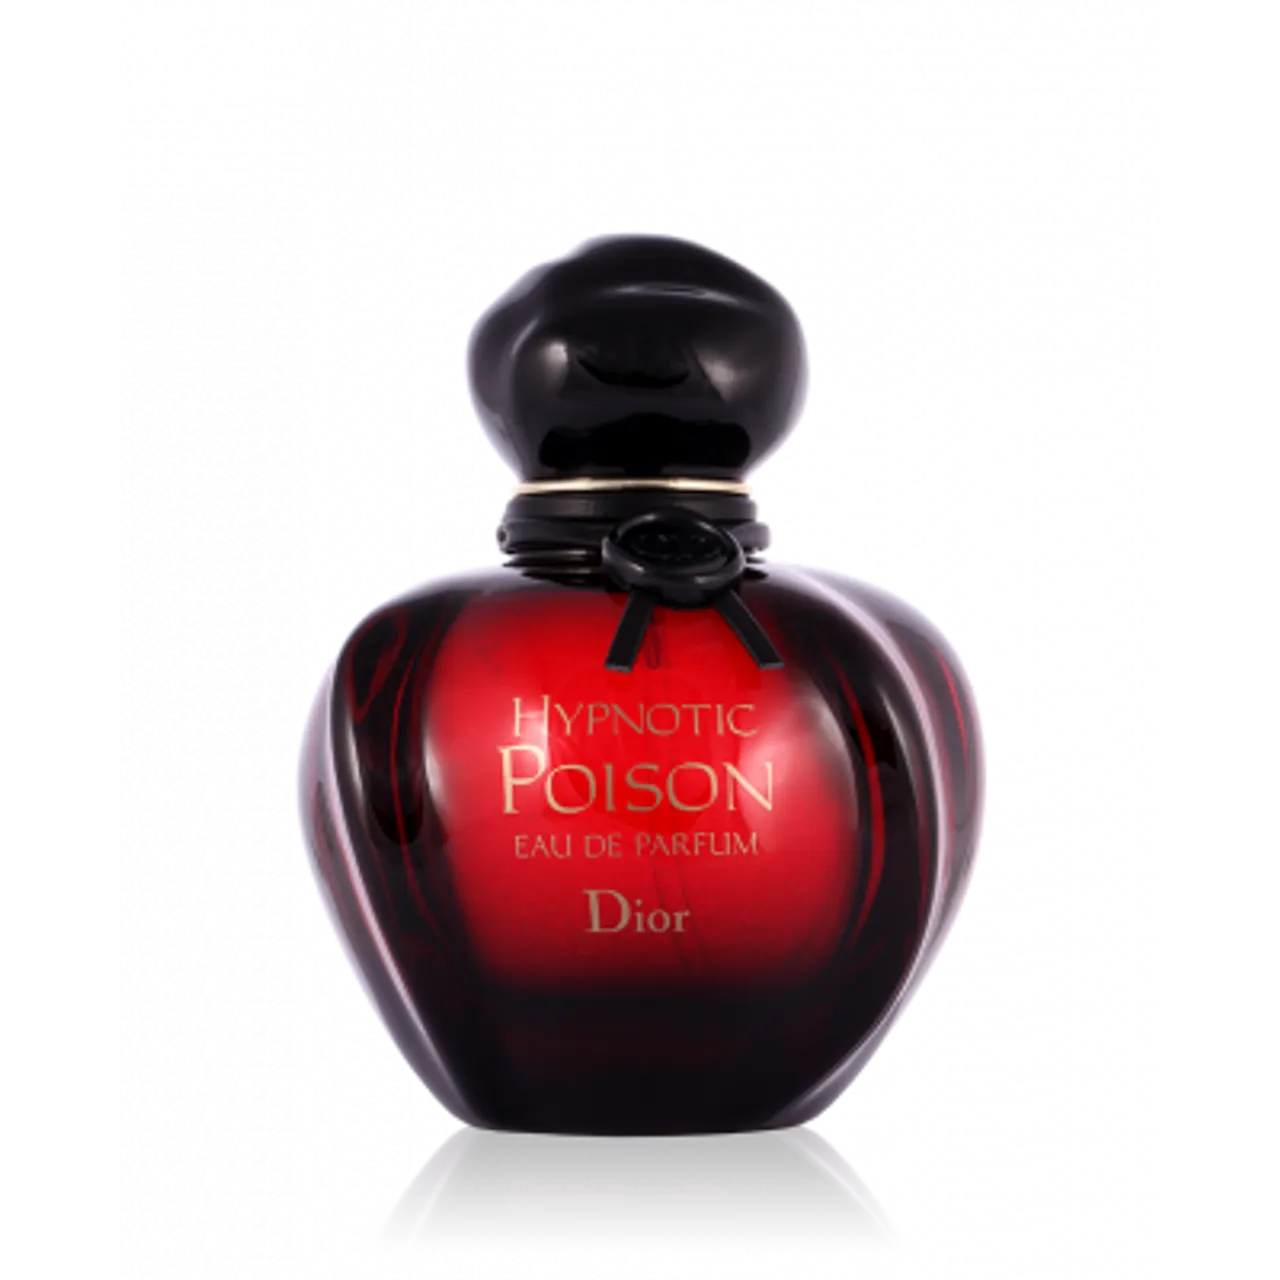 Dior Hypnotic Poison Eau de Parfum 50 ml